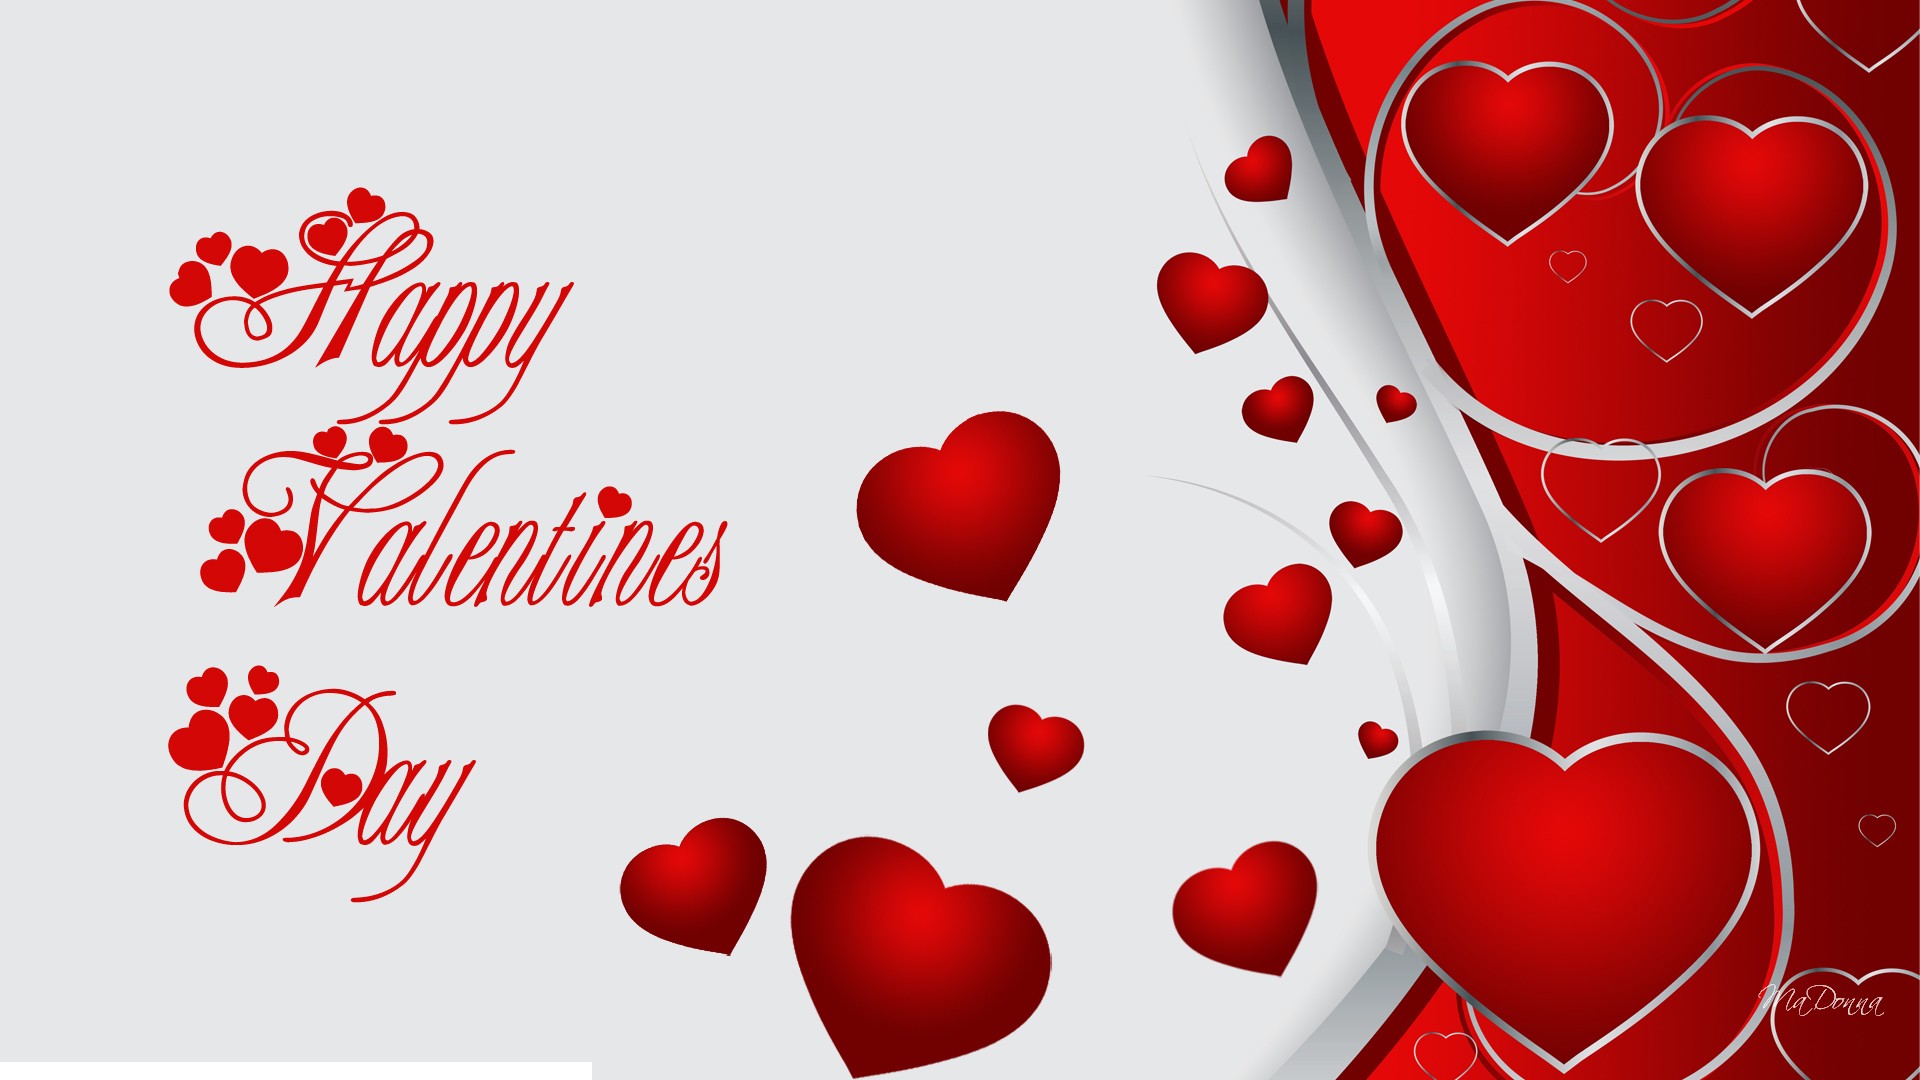 Dù là đang yêu hay đơn phương, ngày Valentine luôn là ngày đặc biệt và thú vị đối với tất cả mọi người. Cùng xem qua những hình ảnh Valentine 2021 để cảm nhận sự khác biệt và đón nhận tình yêu trong năm mới.